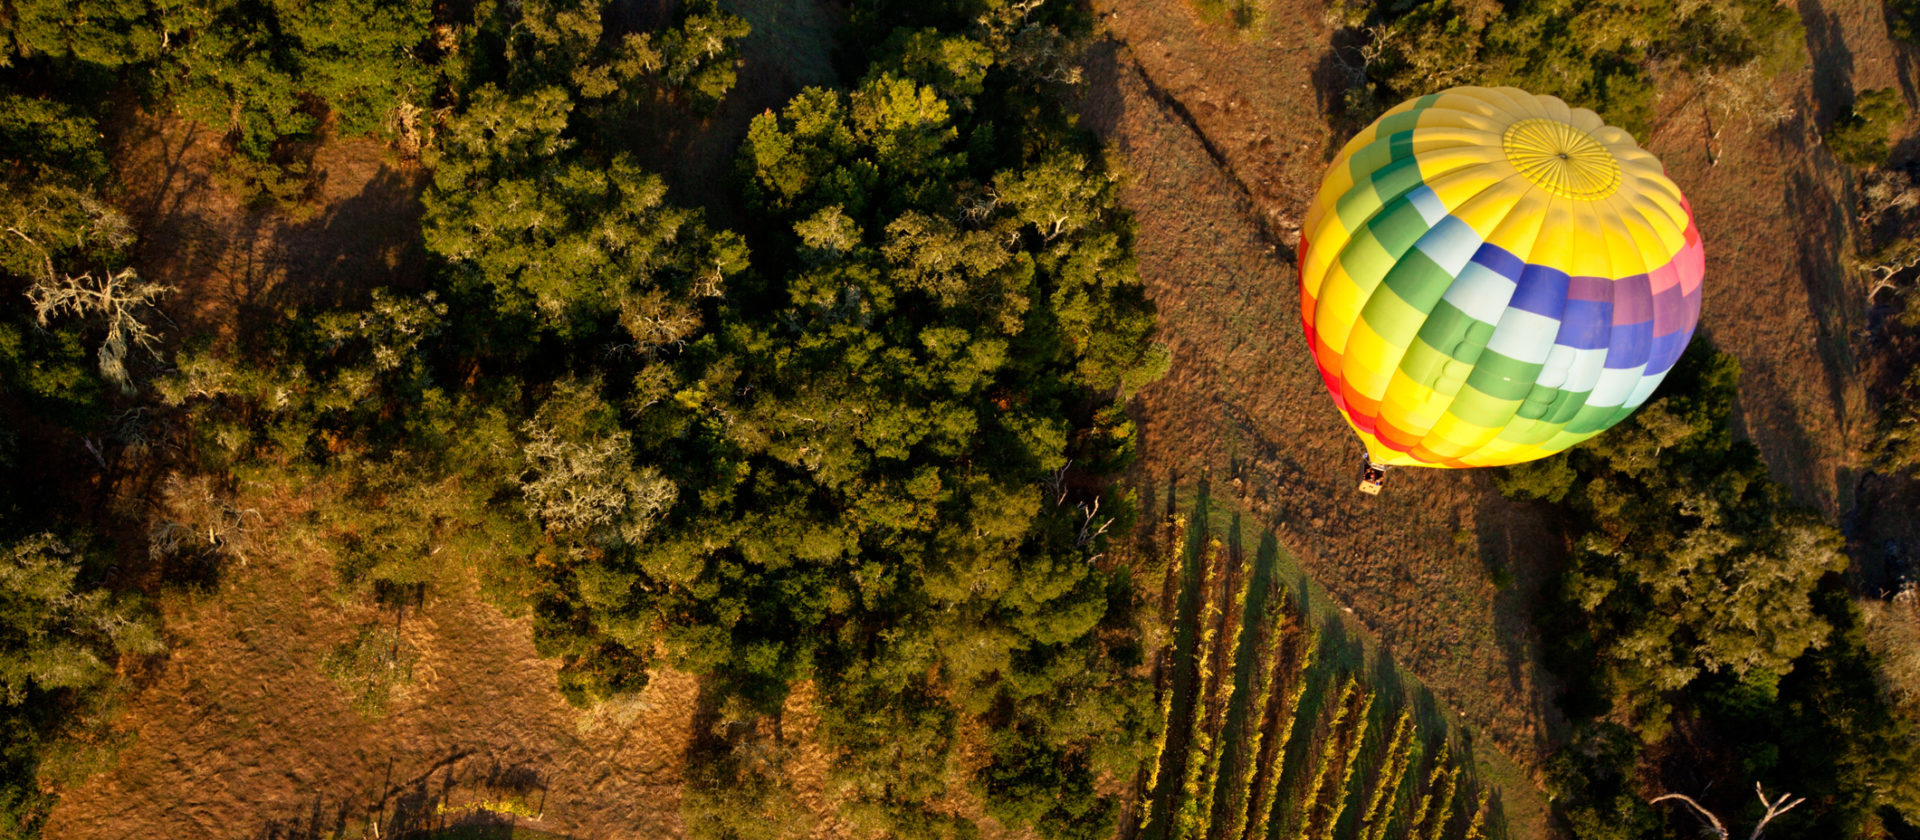 Hot air ballooning over Napa Valley winery.